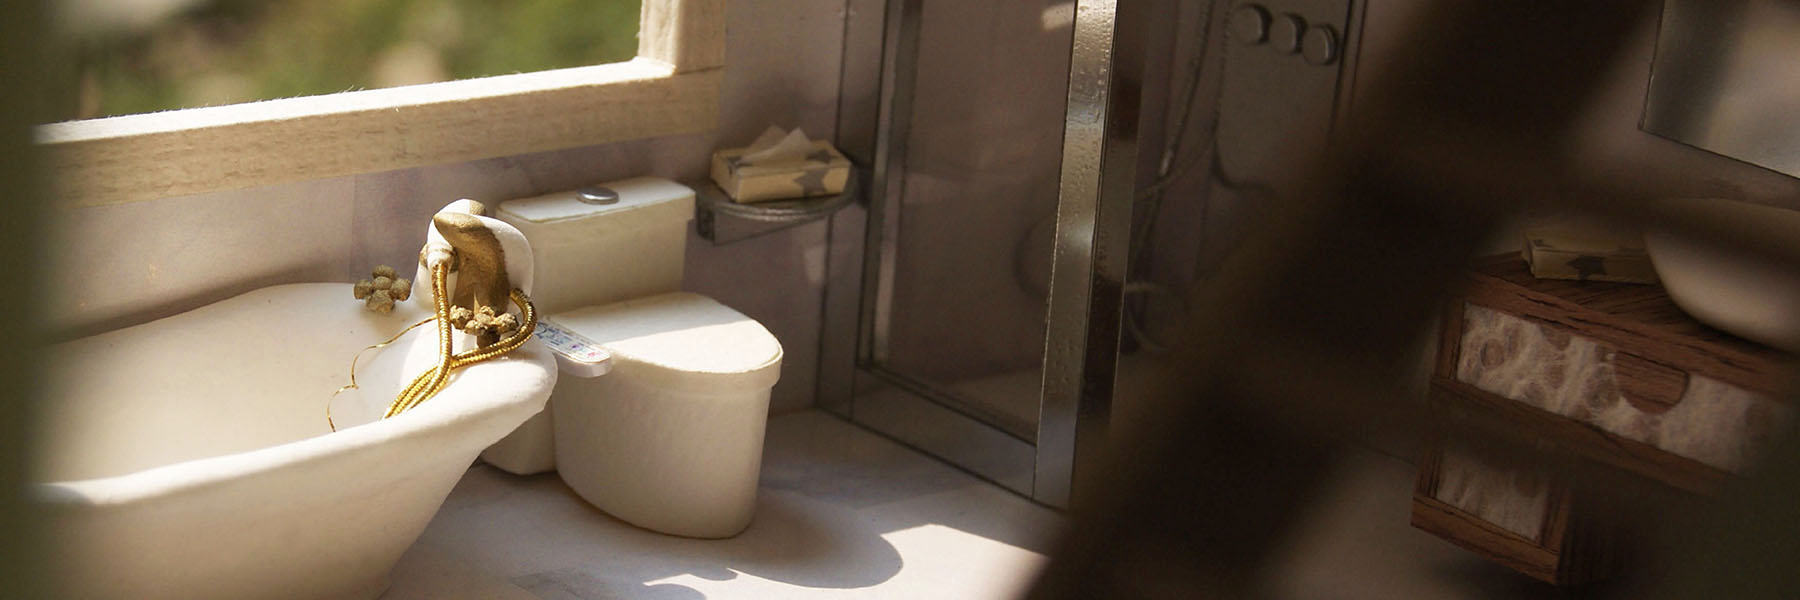 陽光撒在擁有古典搪瓷浴缸的紙紮浴室裡